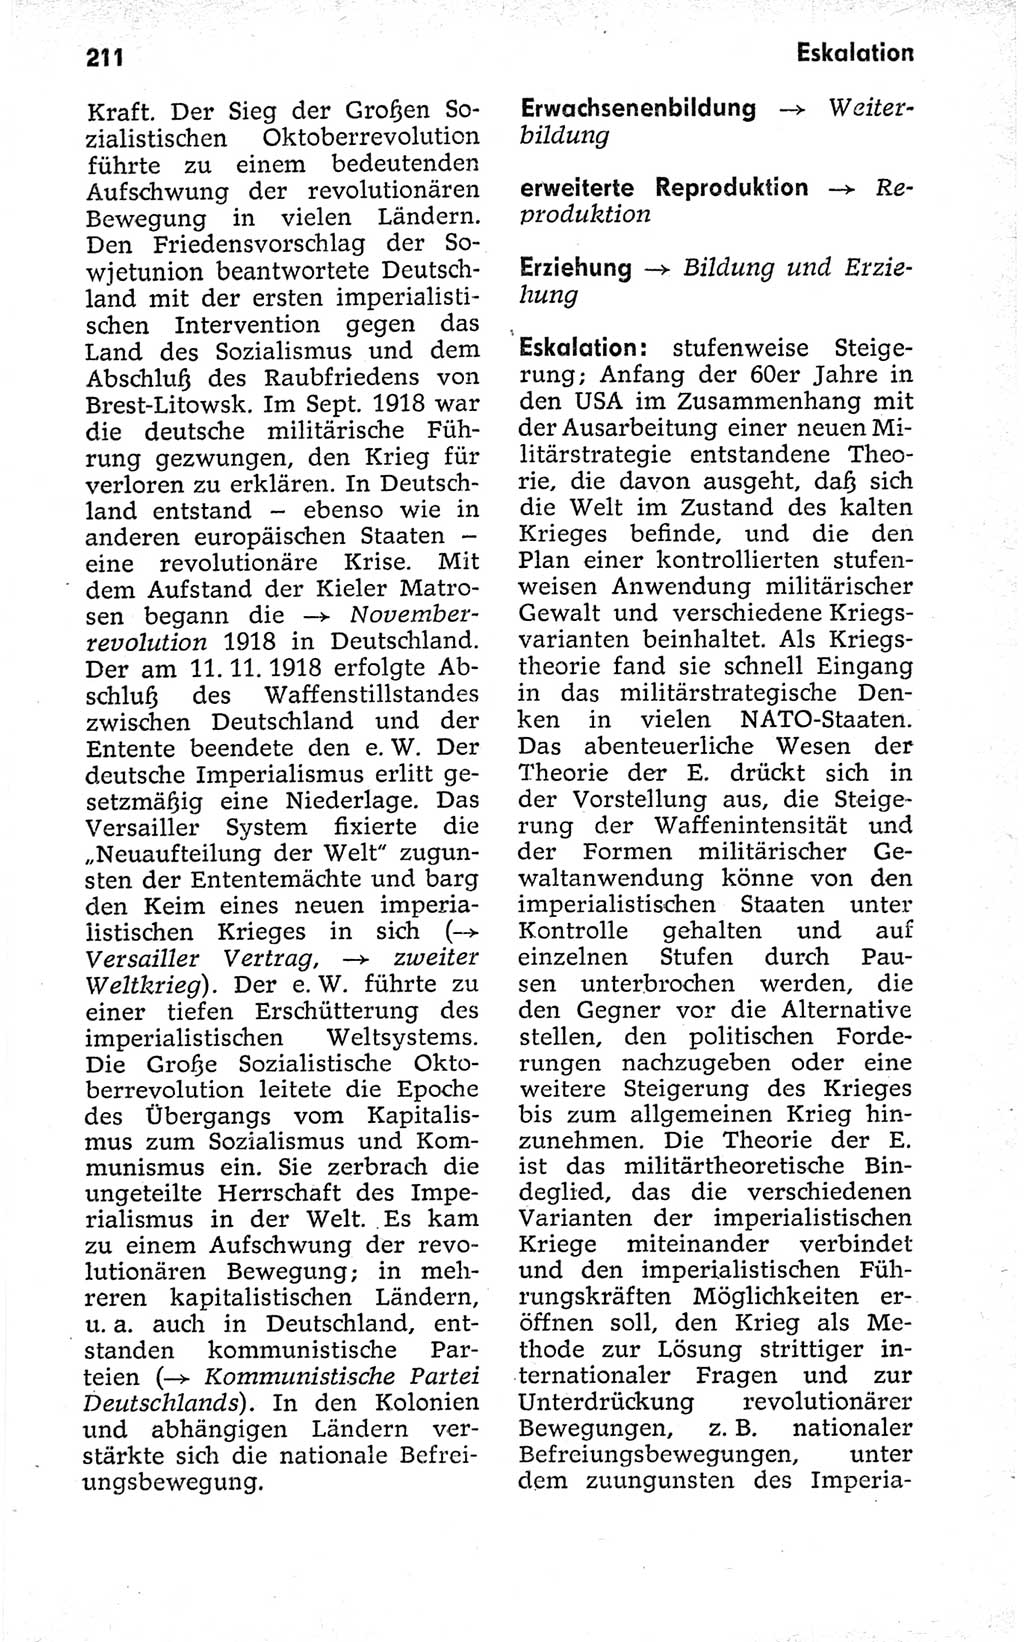 Kleines politisches Wörterbuch [Deutsche Demokratische Republik (DDR)] 1973, Seite 211 (Kl. pol. Wb. DDR 1973, S. 211)